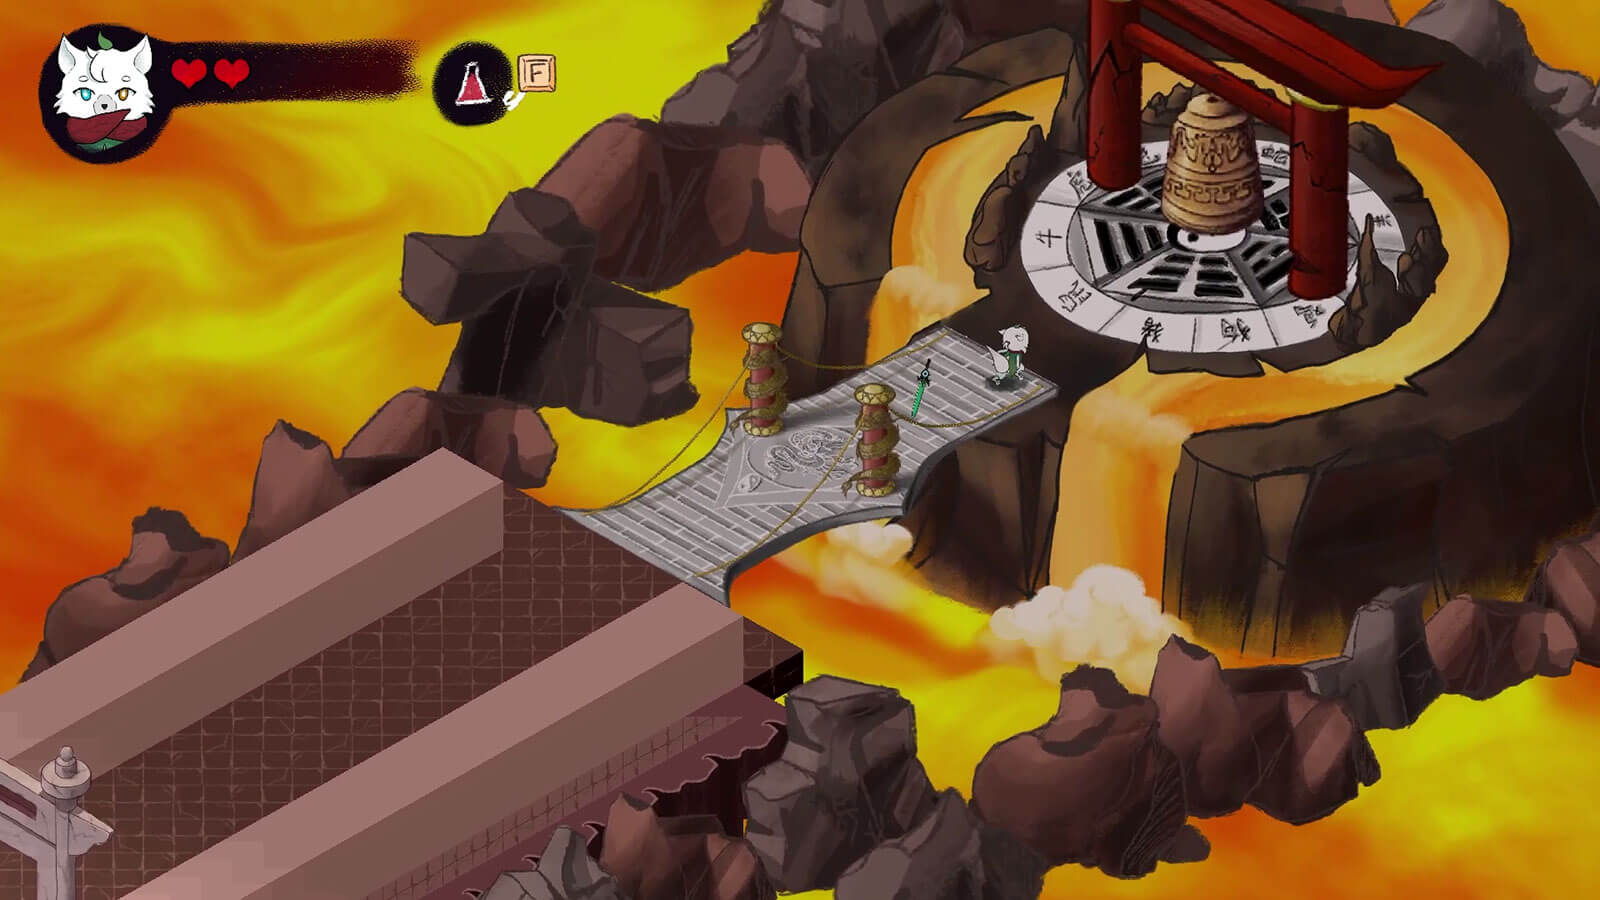 El personaje atraviesa un puente sobre lava hasta una plataforma con símbolos del zodíaco chino en el suelo